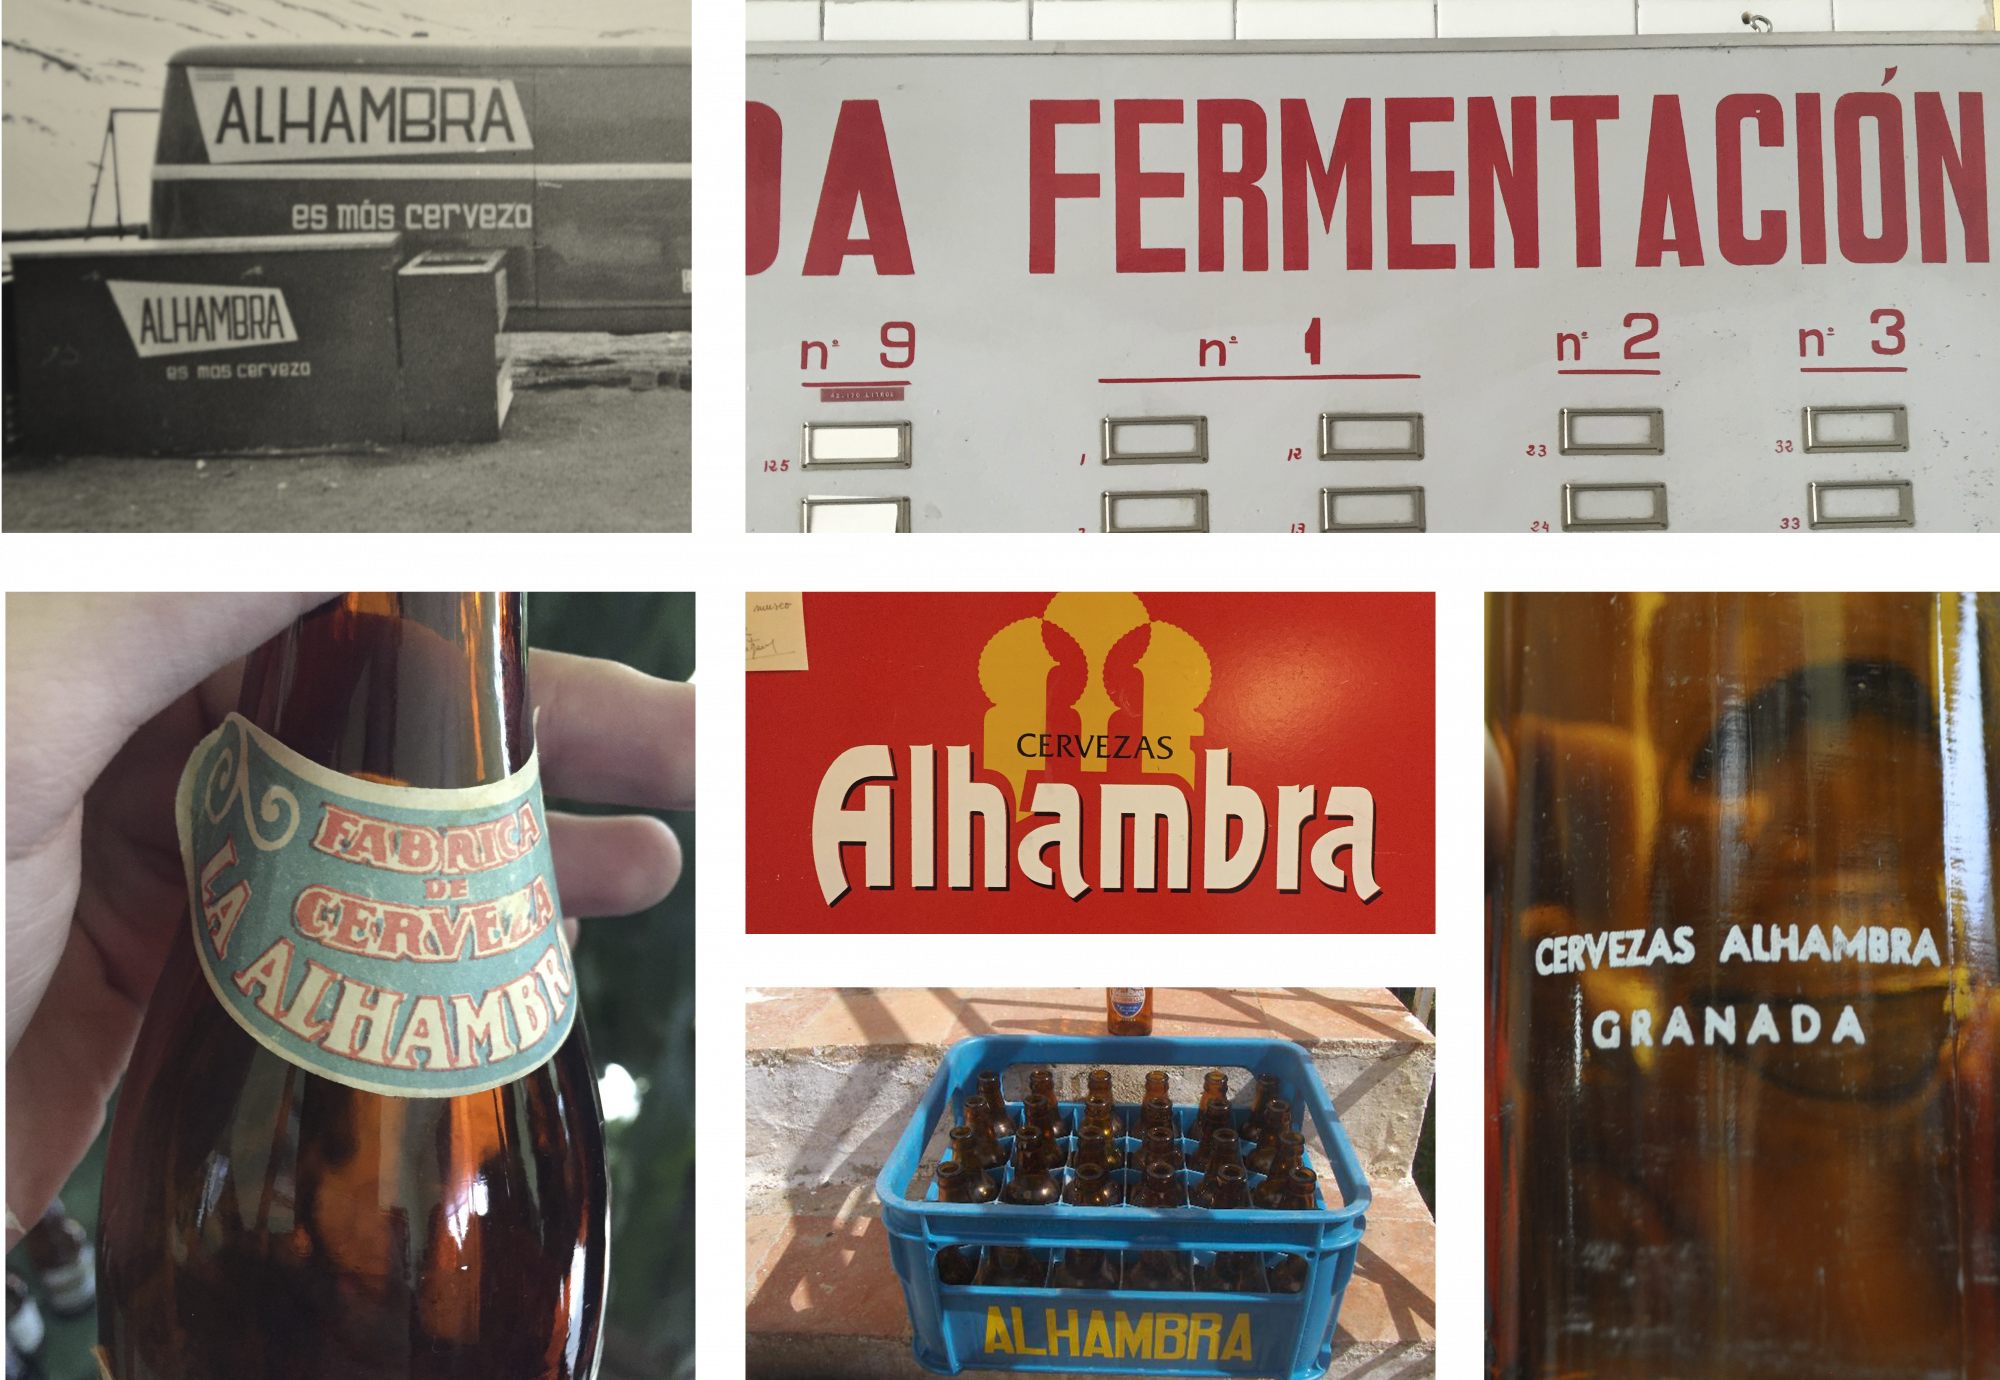 Un collage de imágenes muestran las diferentes tipografías que se encontraron en la fábrica de Granada